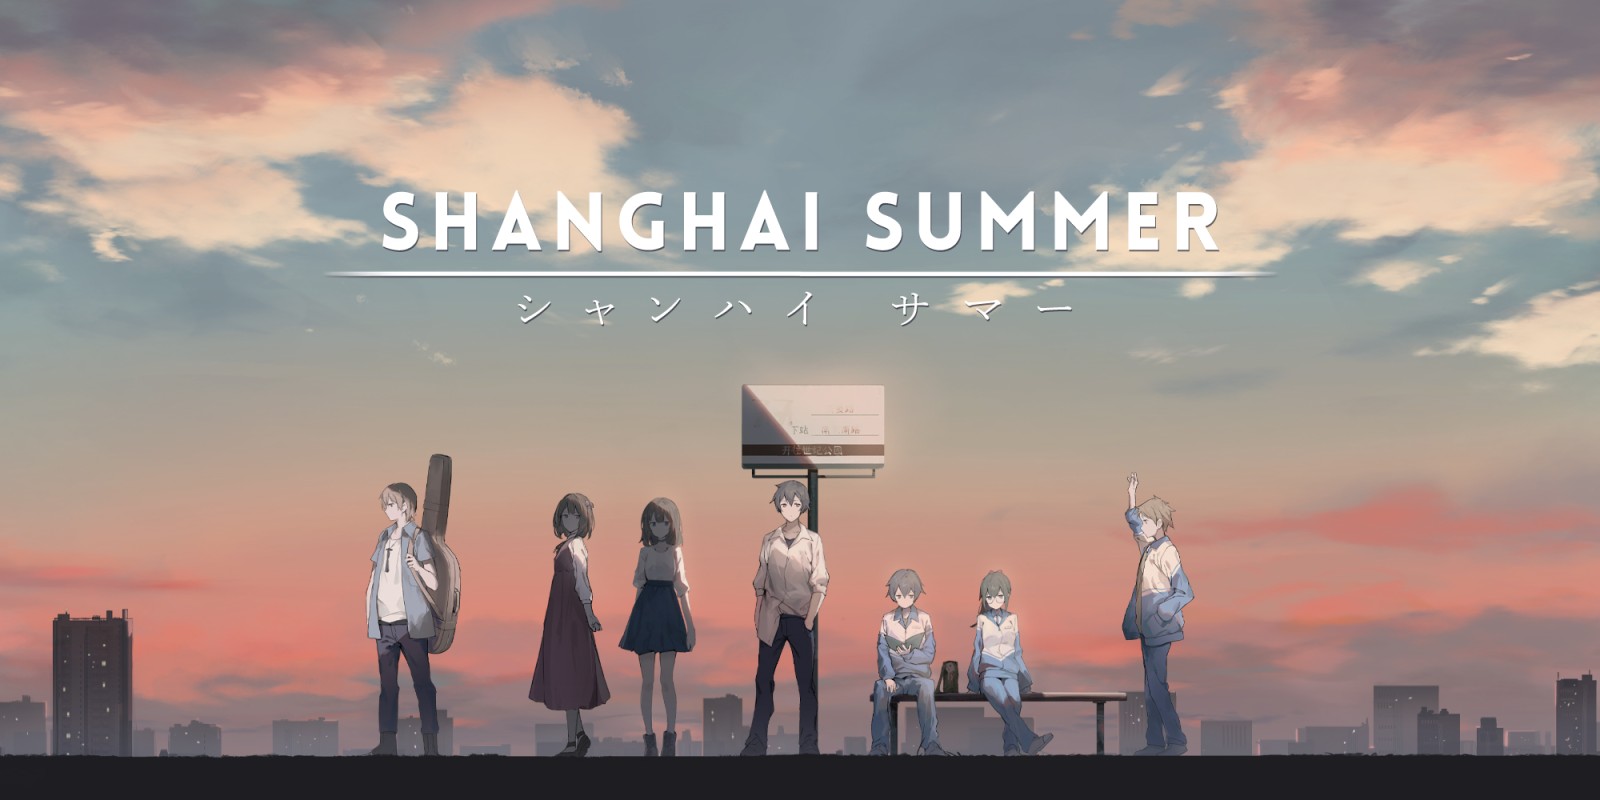 nsz，中文，下载，补丁，薄暮夏梦，Shanghai Summer